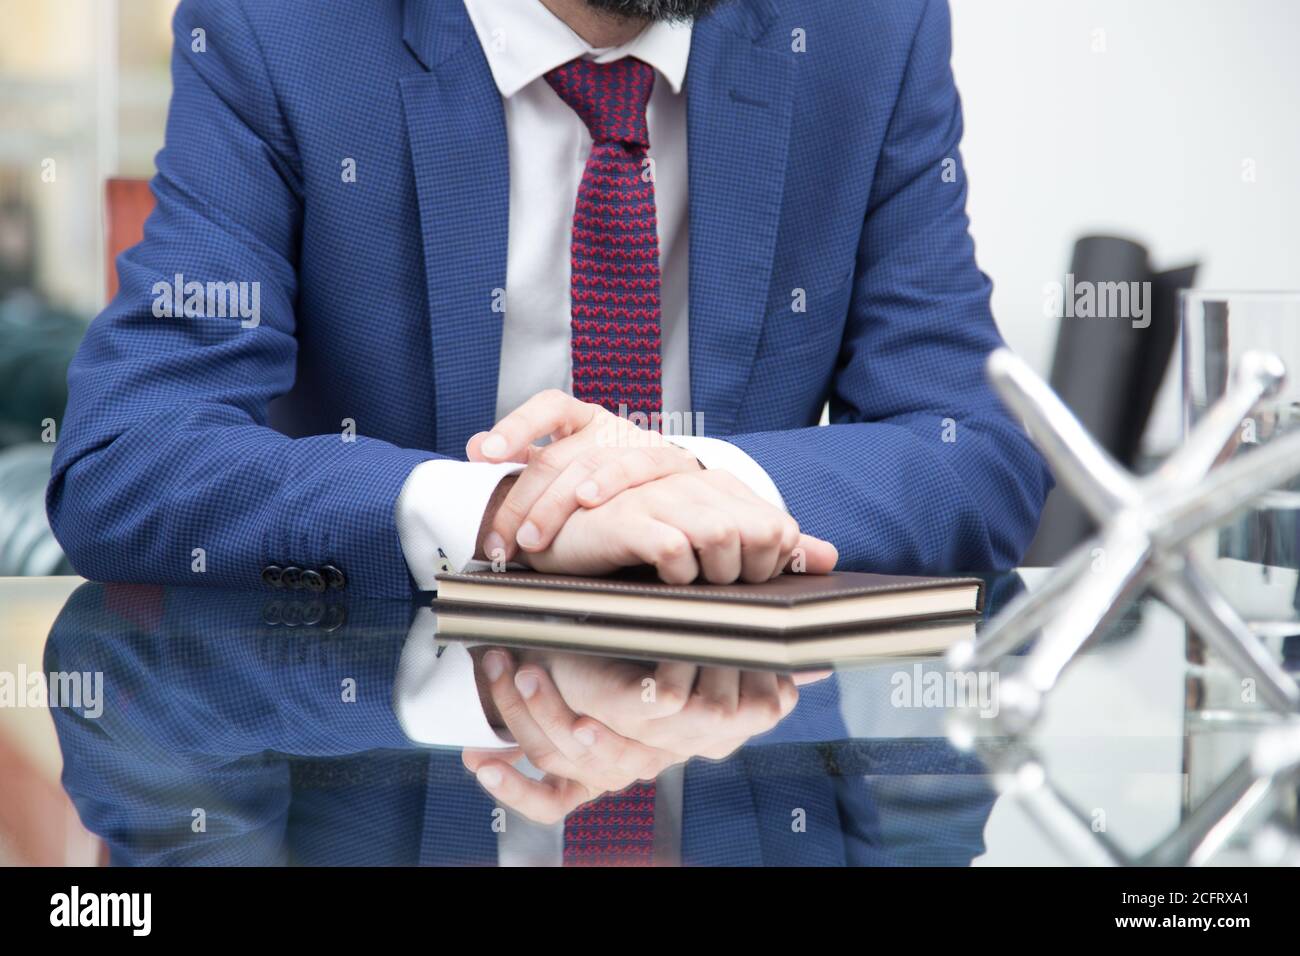 gros plan d'une personne avec un costume bleu, une cravate rouge et une  chemise blanche, assis sur un bureau en verre, pliant ses mains sur un  carnet marron Photo Stock - Alamy